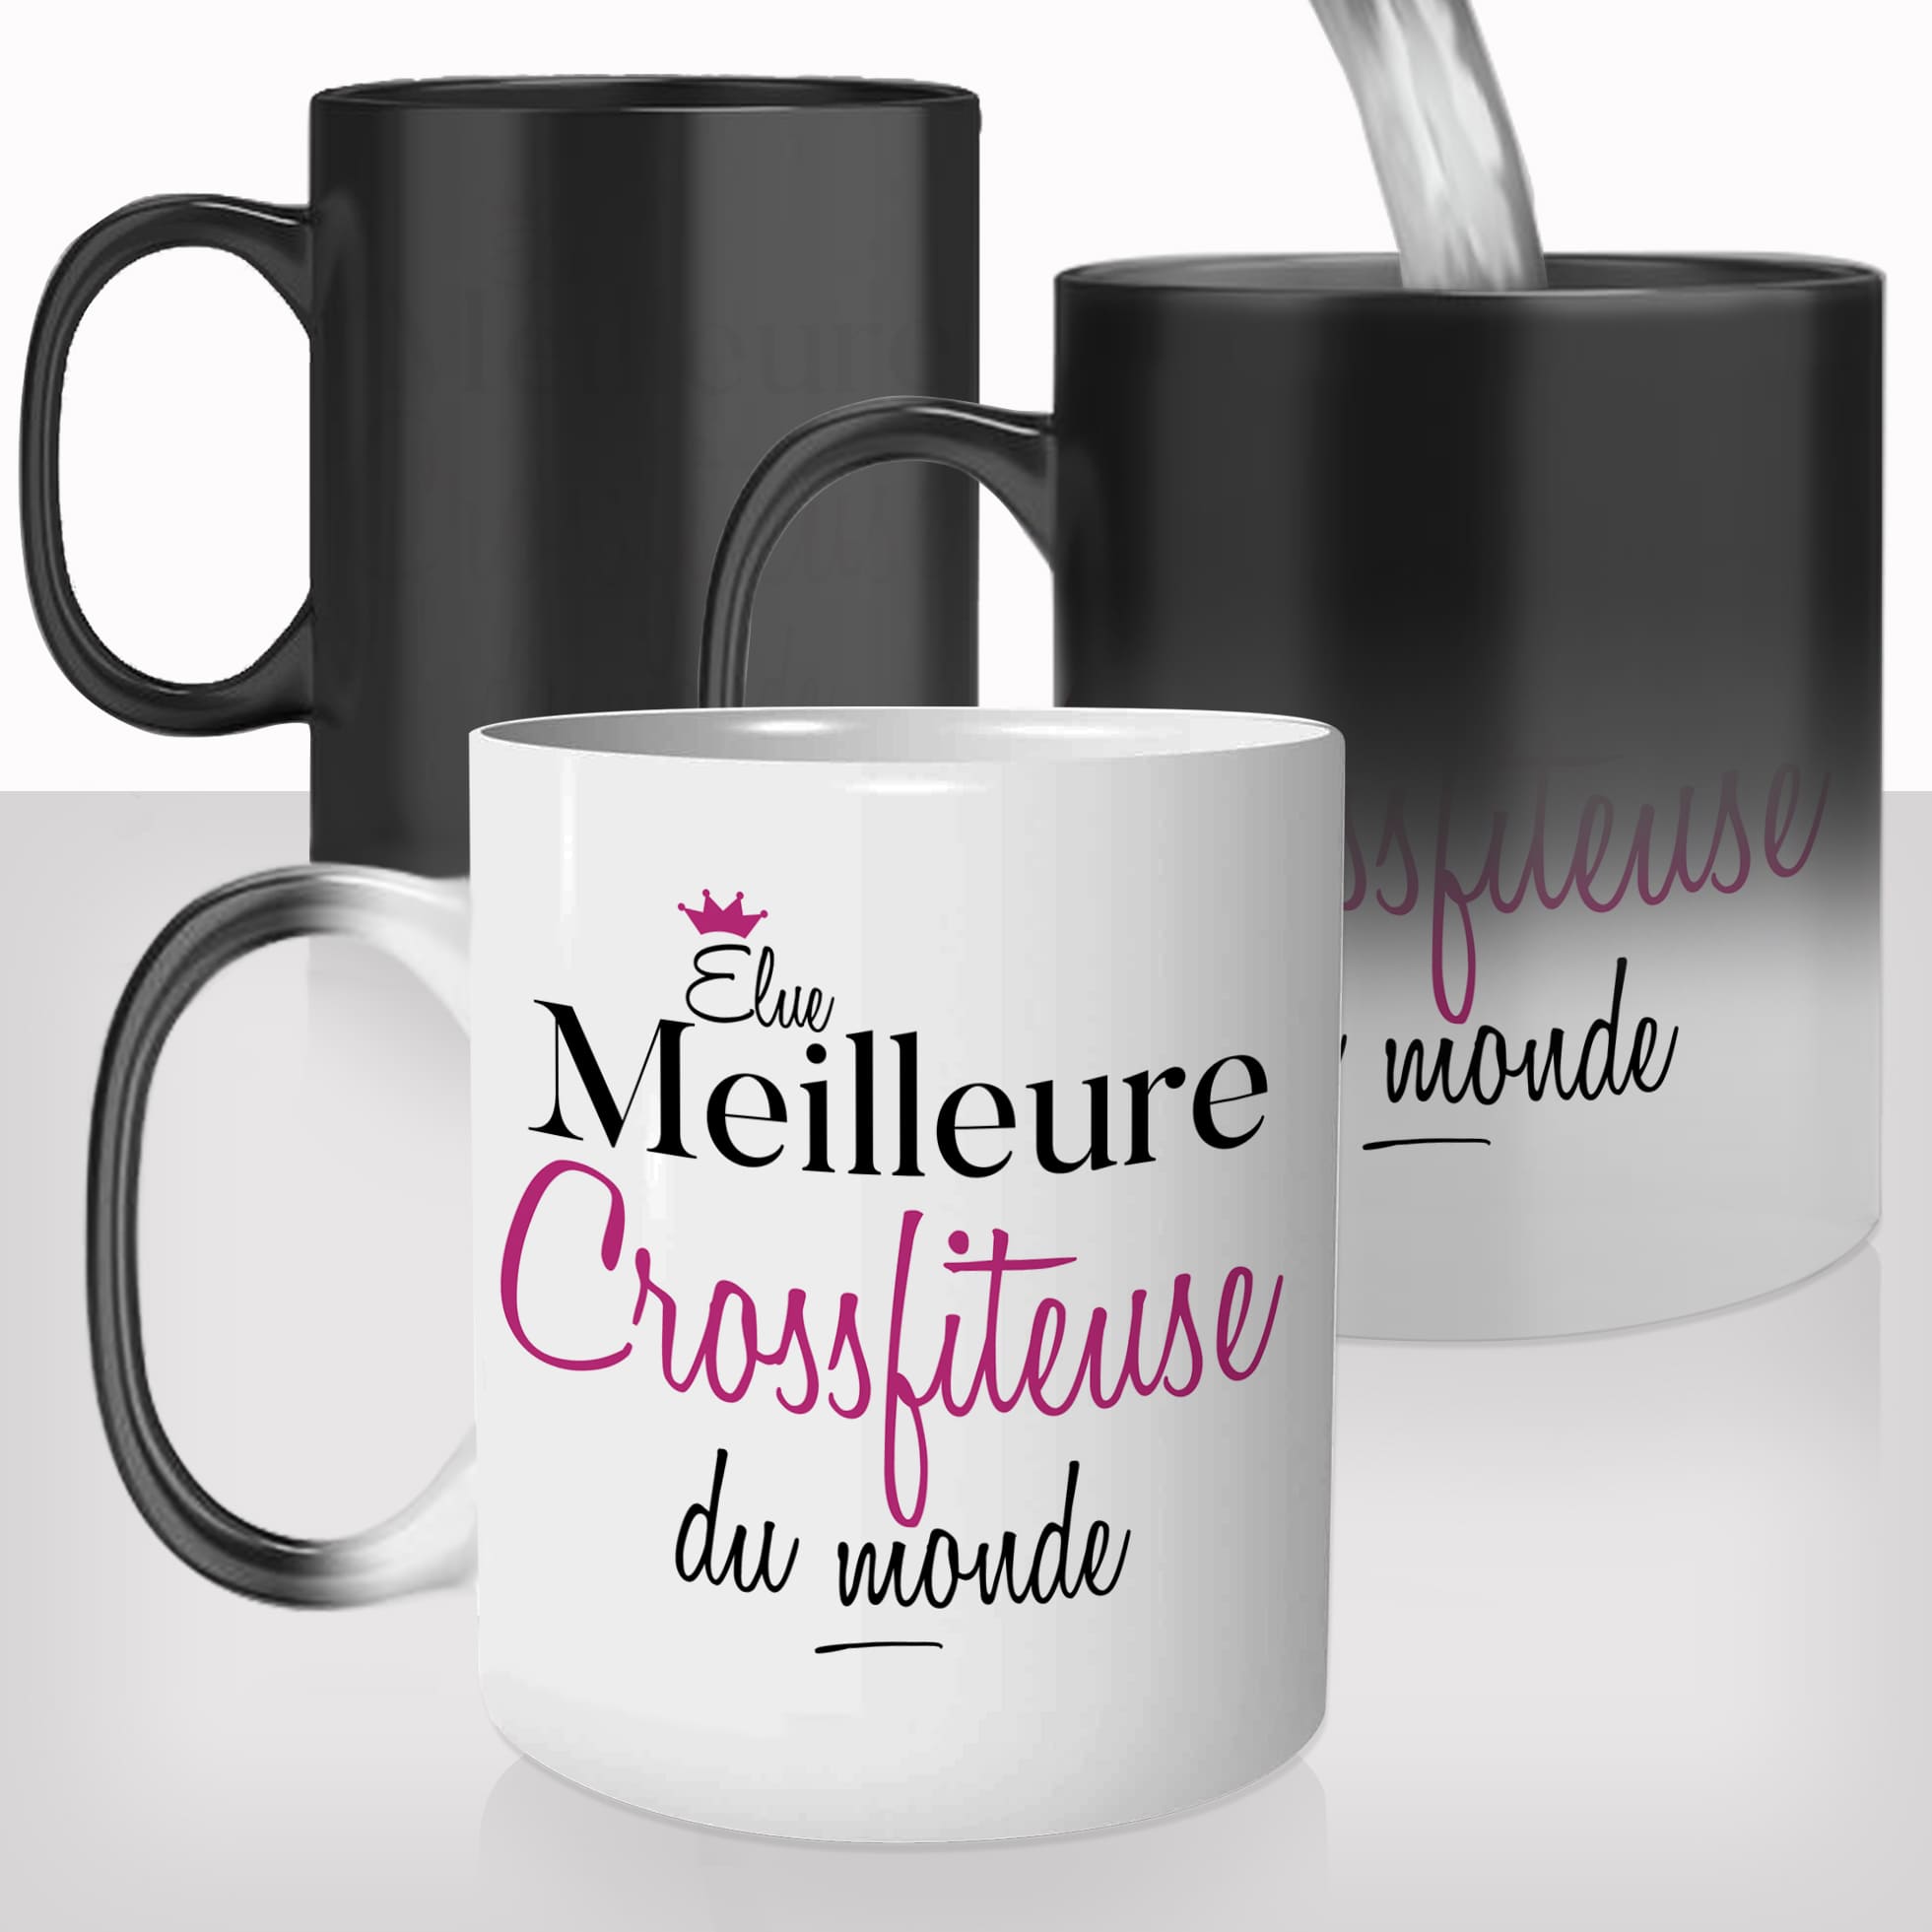 mug-magique-personnalisable-thermoreactif-thermique-elue-meilleure-crossfiteuse-crossfit-sport-femme-personnalisé-idée-cadeau-original